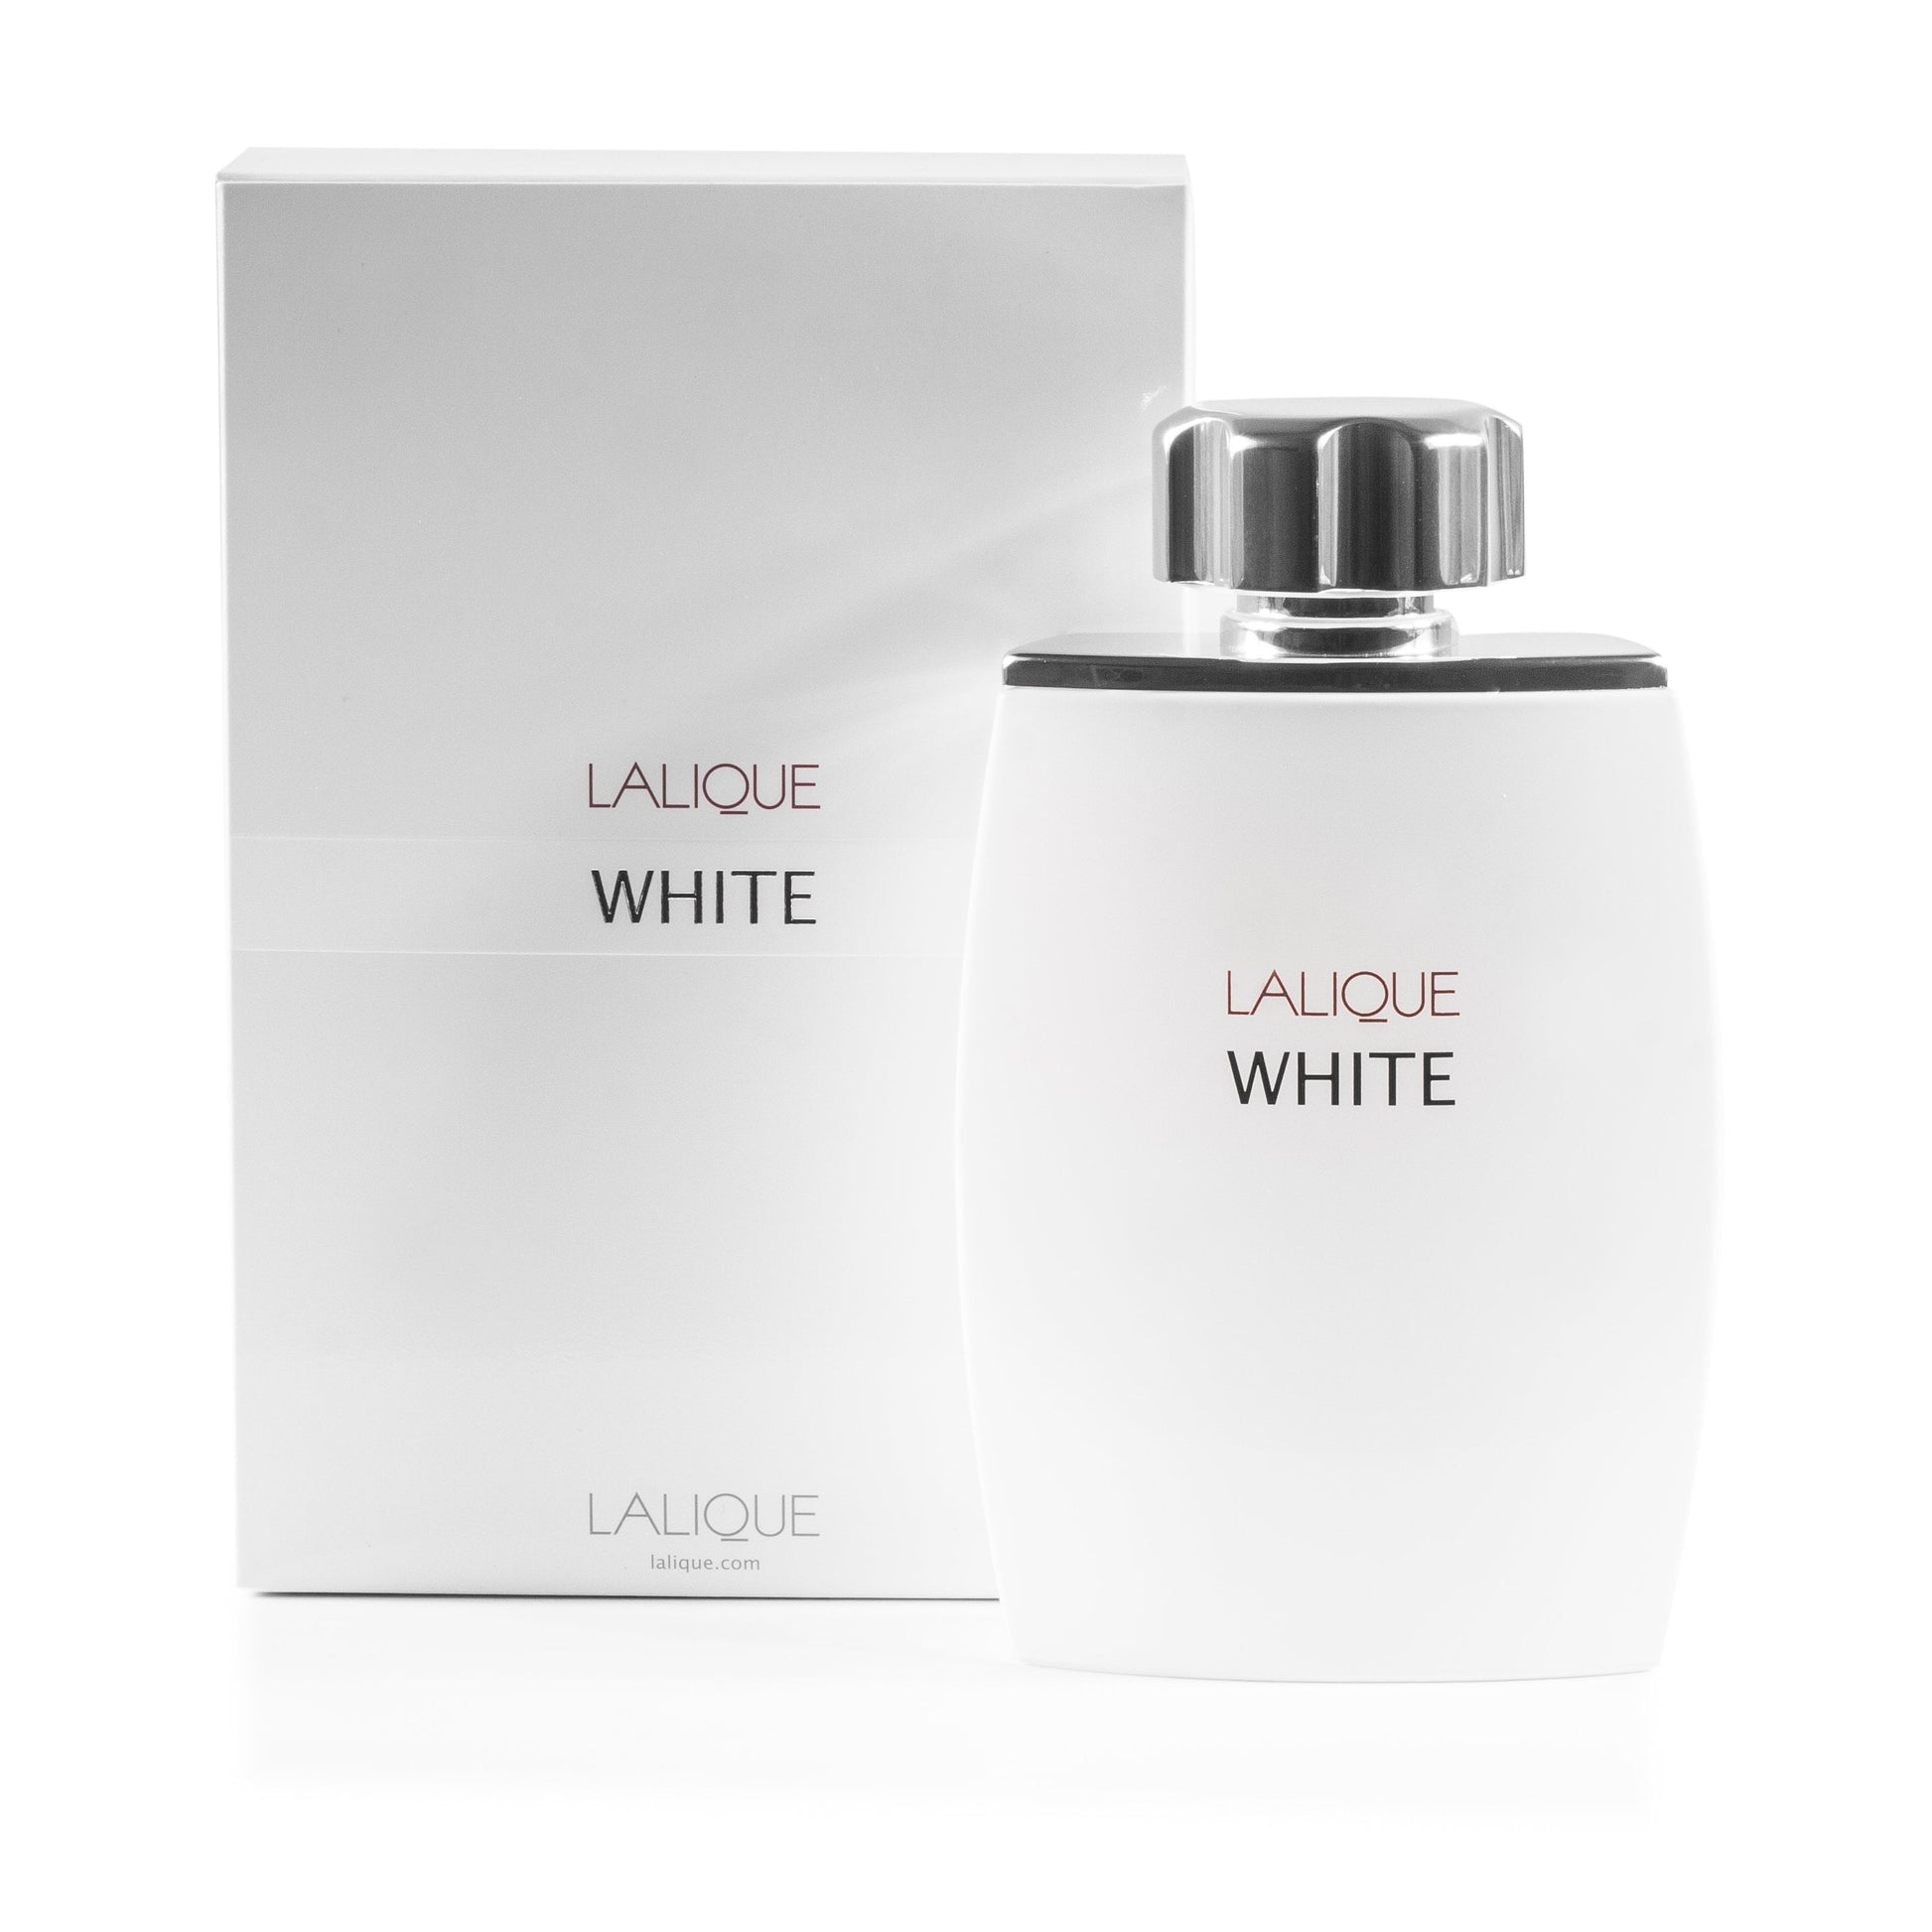 Lalique White Eau de Toilette Spray for Men by Lalique, Product image 1